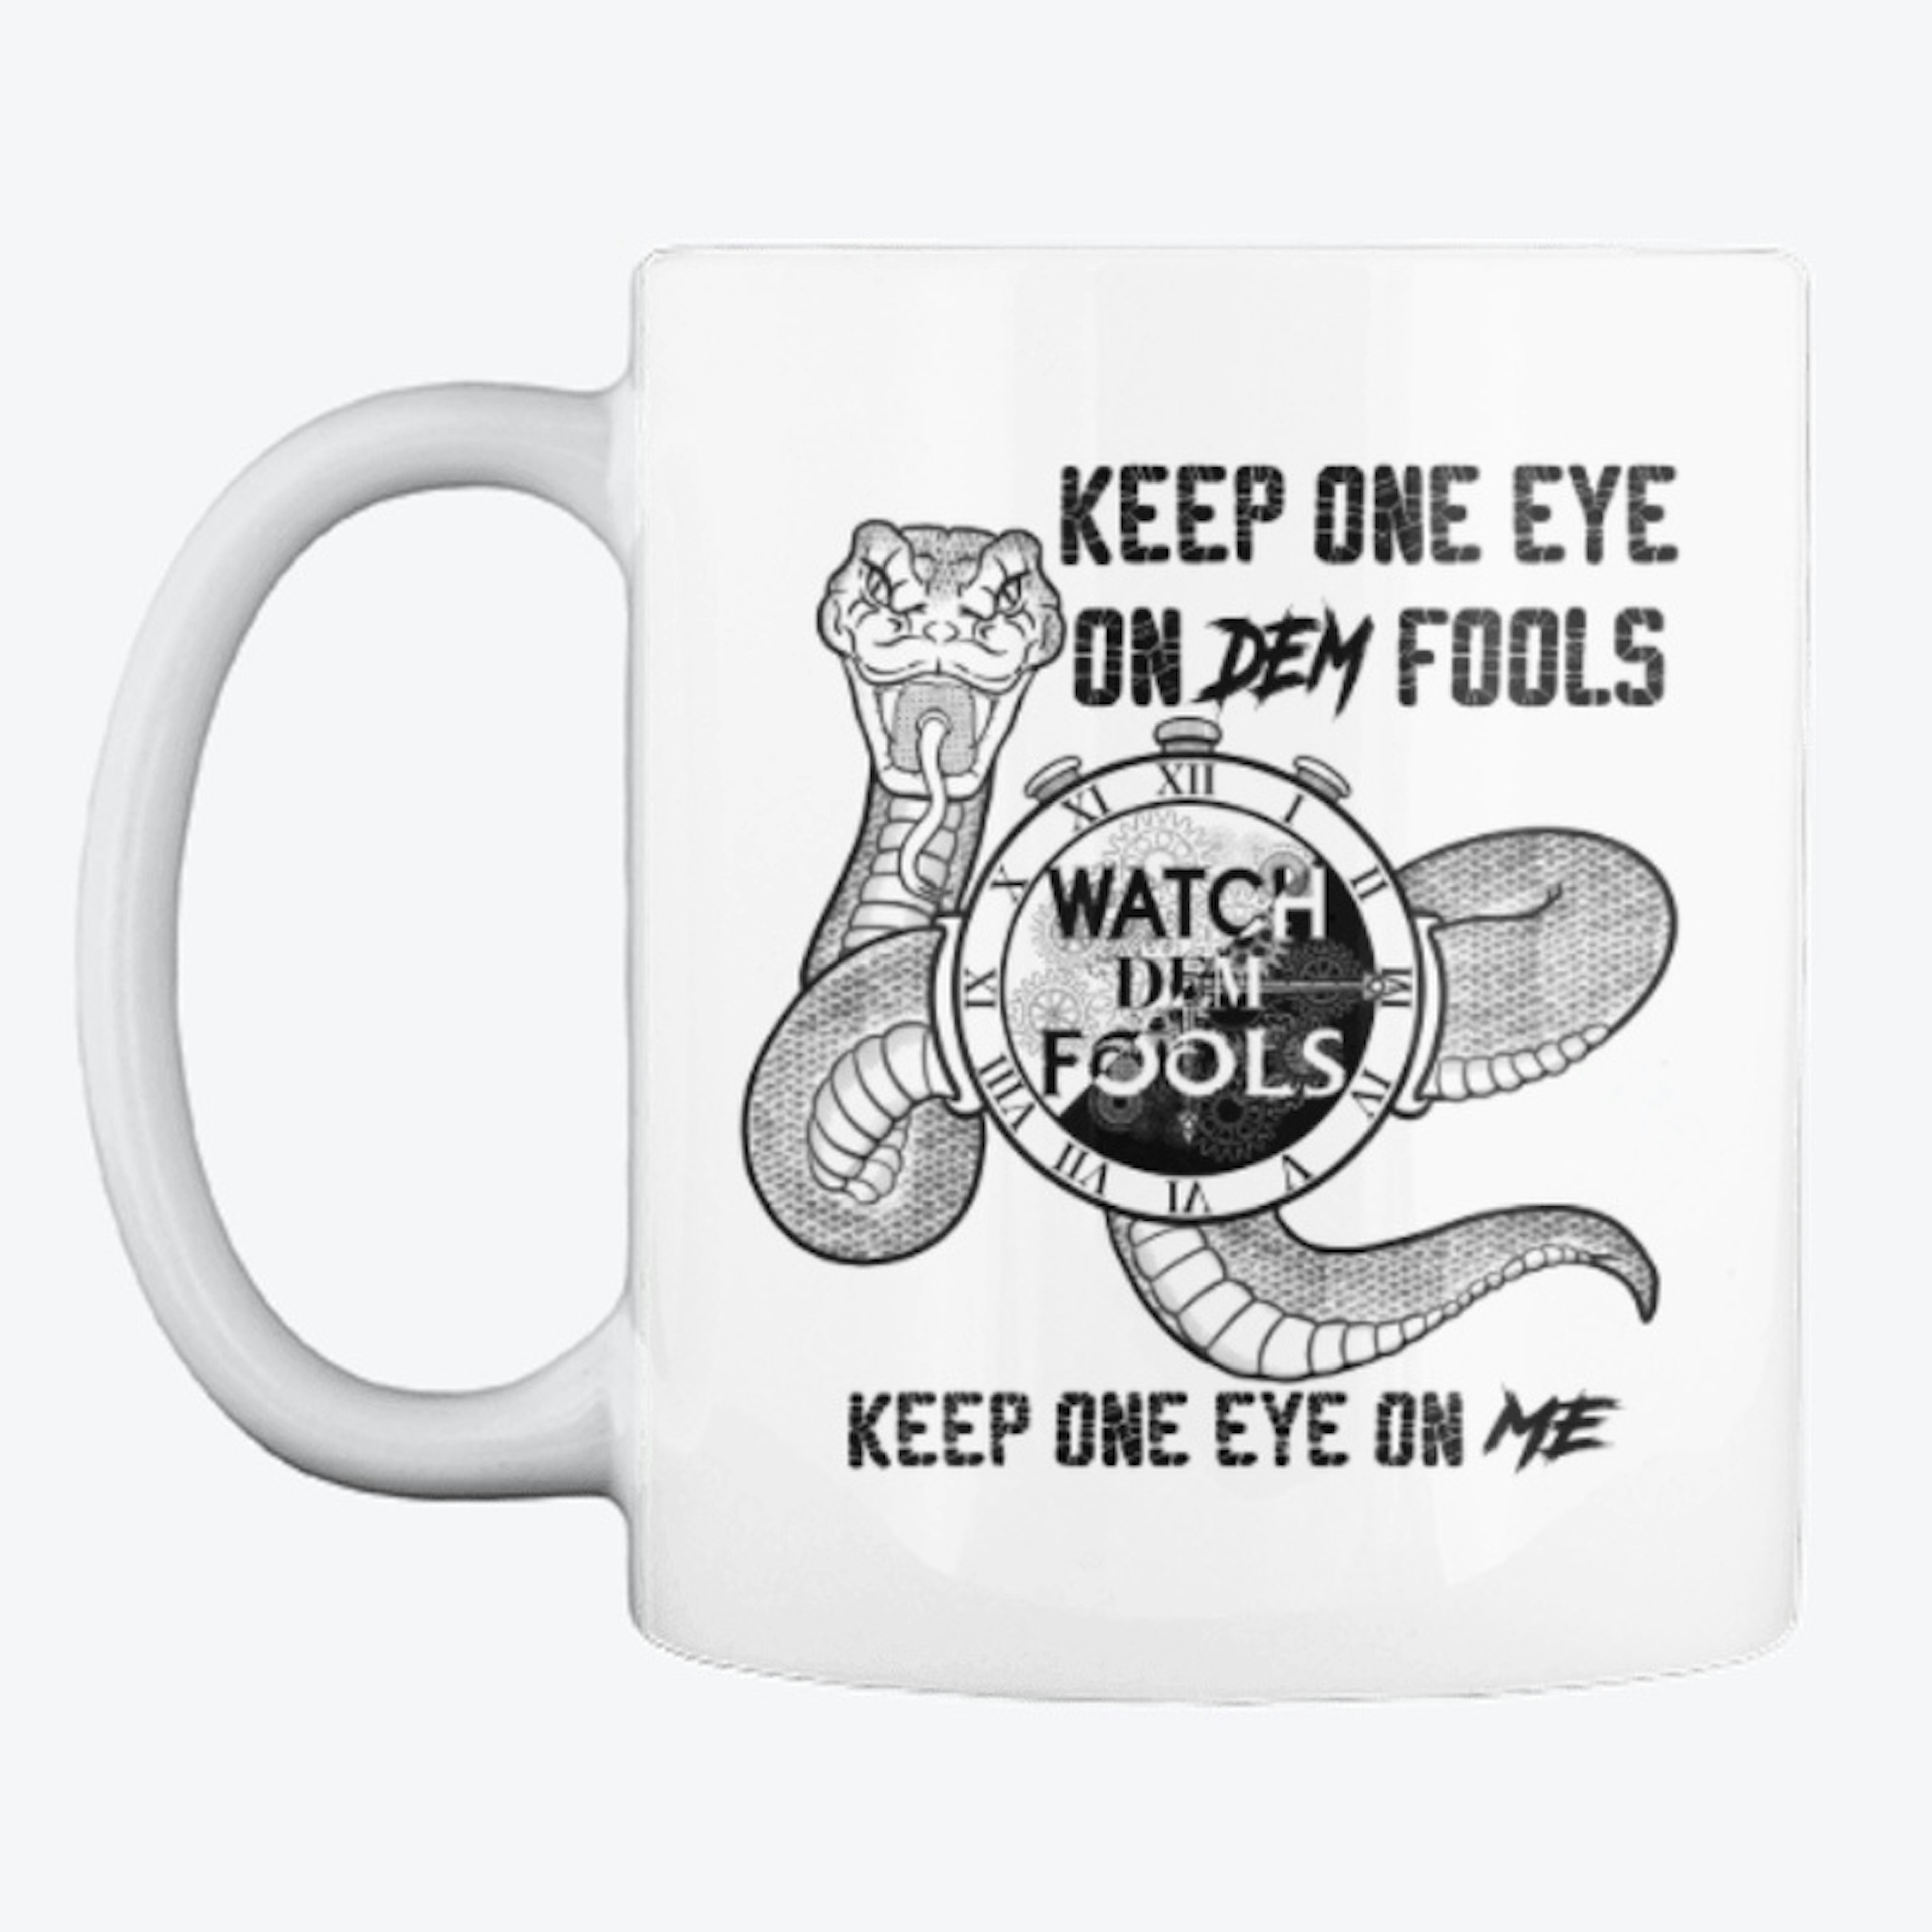 Keep One Eye On Dem Fools Mug